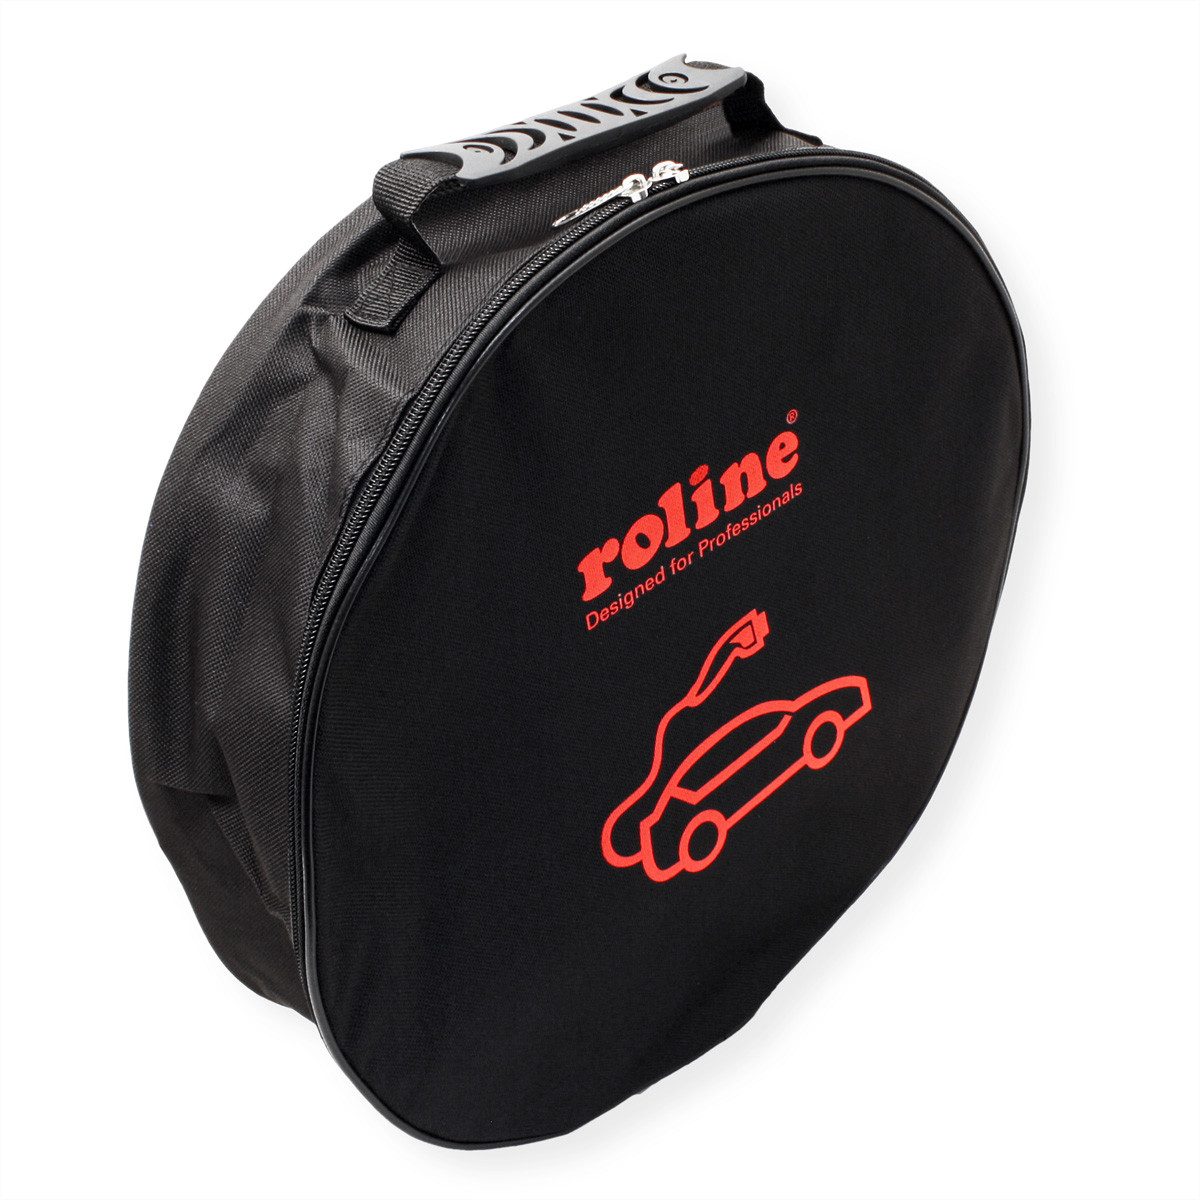 ROLINE Schutztasche für E-Auto-Ladekabel Autoladekabel